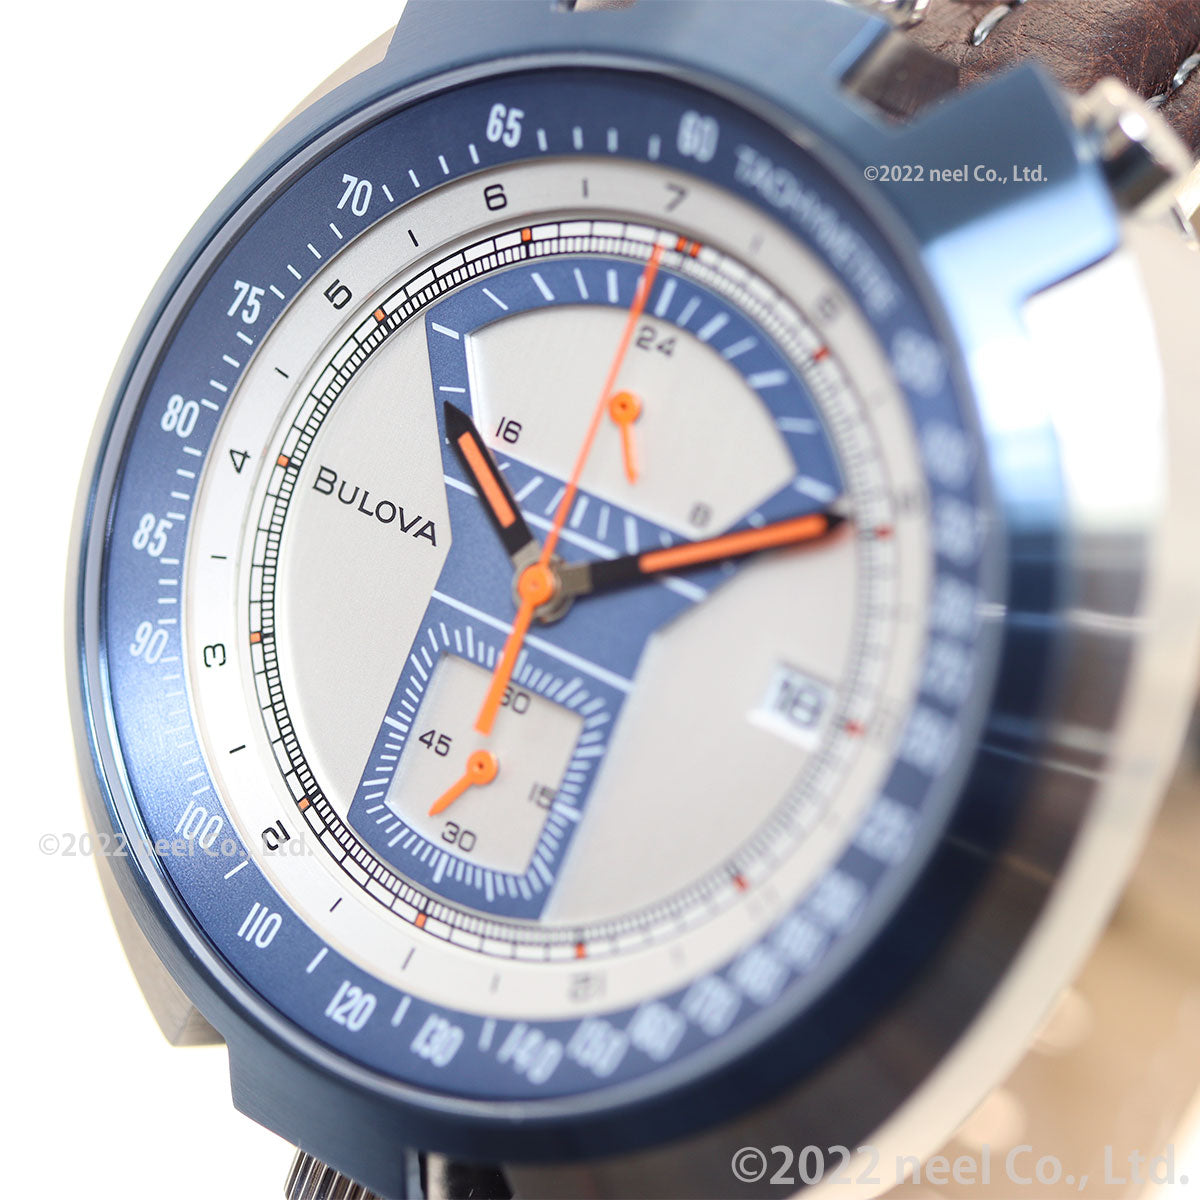 ブローバ BULOVA 腕時計 メンズ アーカイブシリーズ ARCHIVE Series パーキングメーター クロノグラフ Parking meter 世界限定モデル 98B390